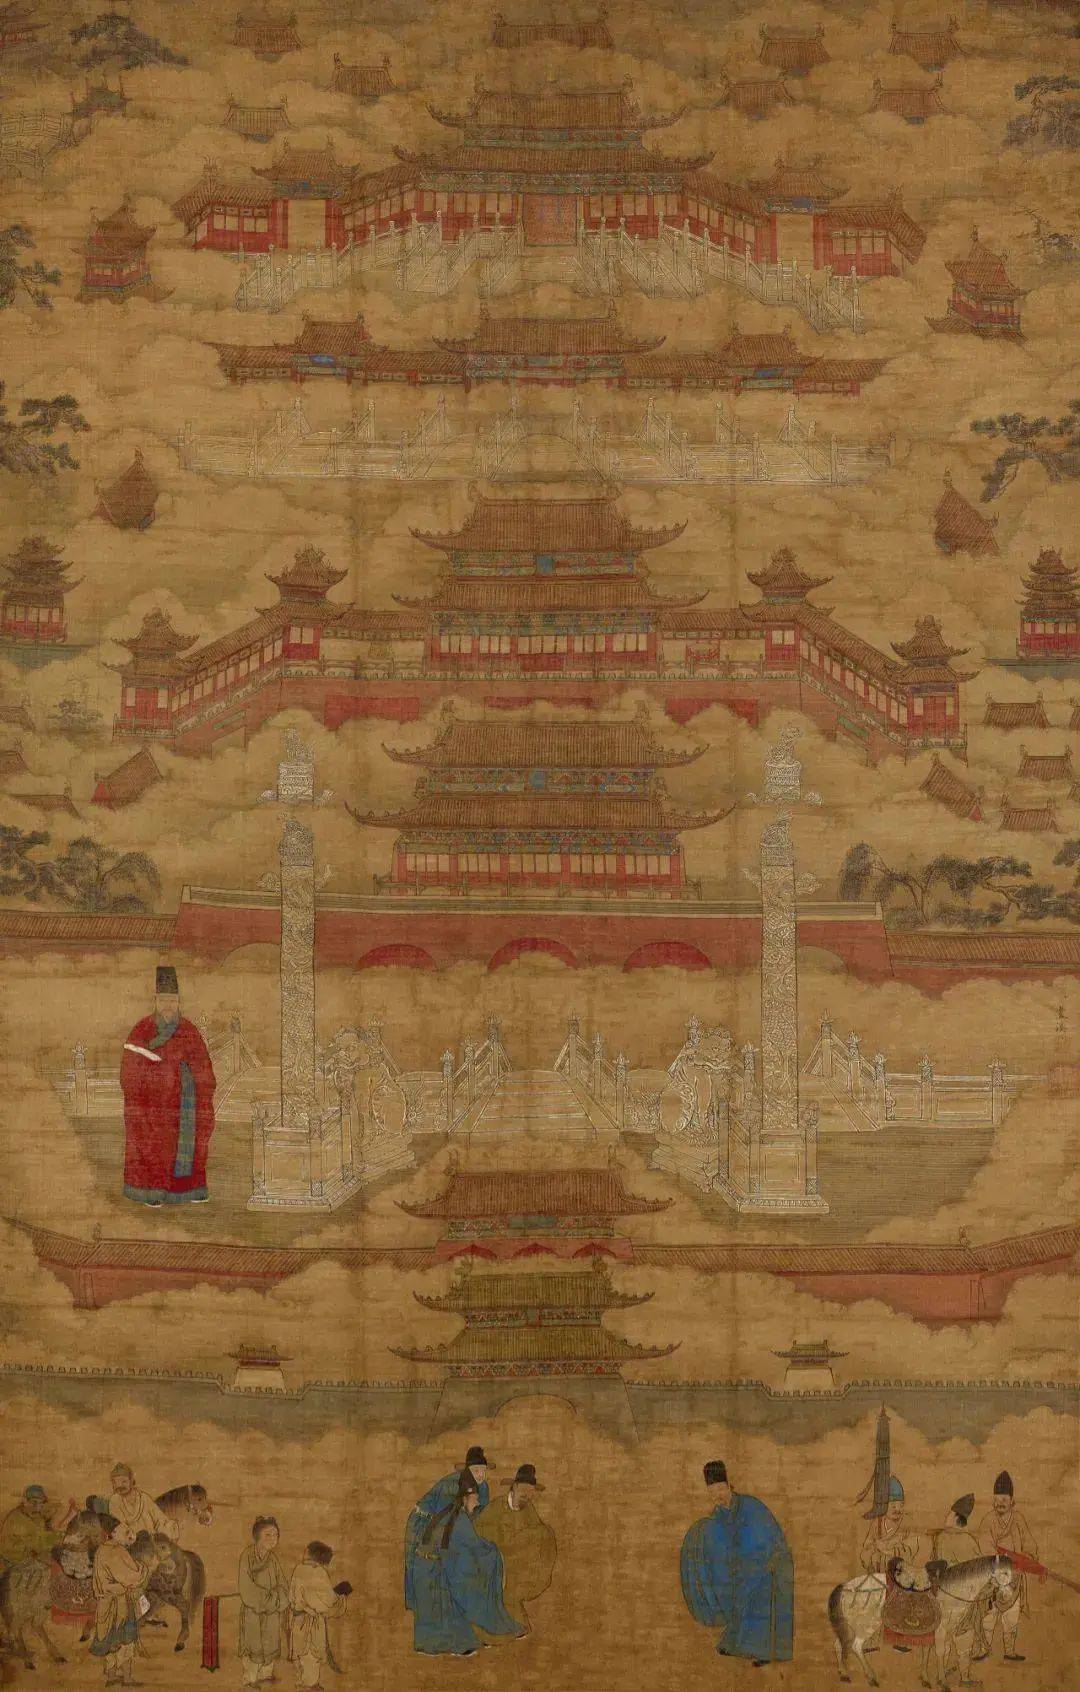 大英博物馆藏中国绘画——石涛、 吴历 、 冷枚等